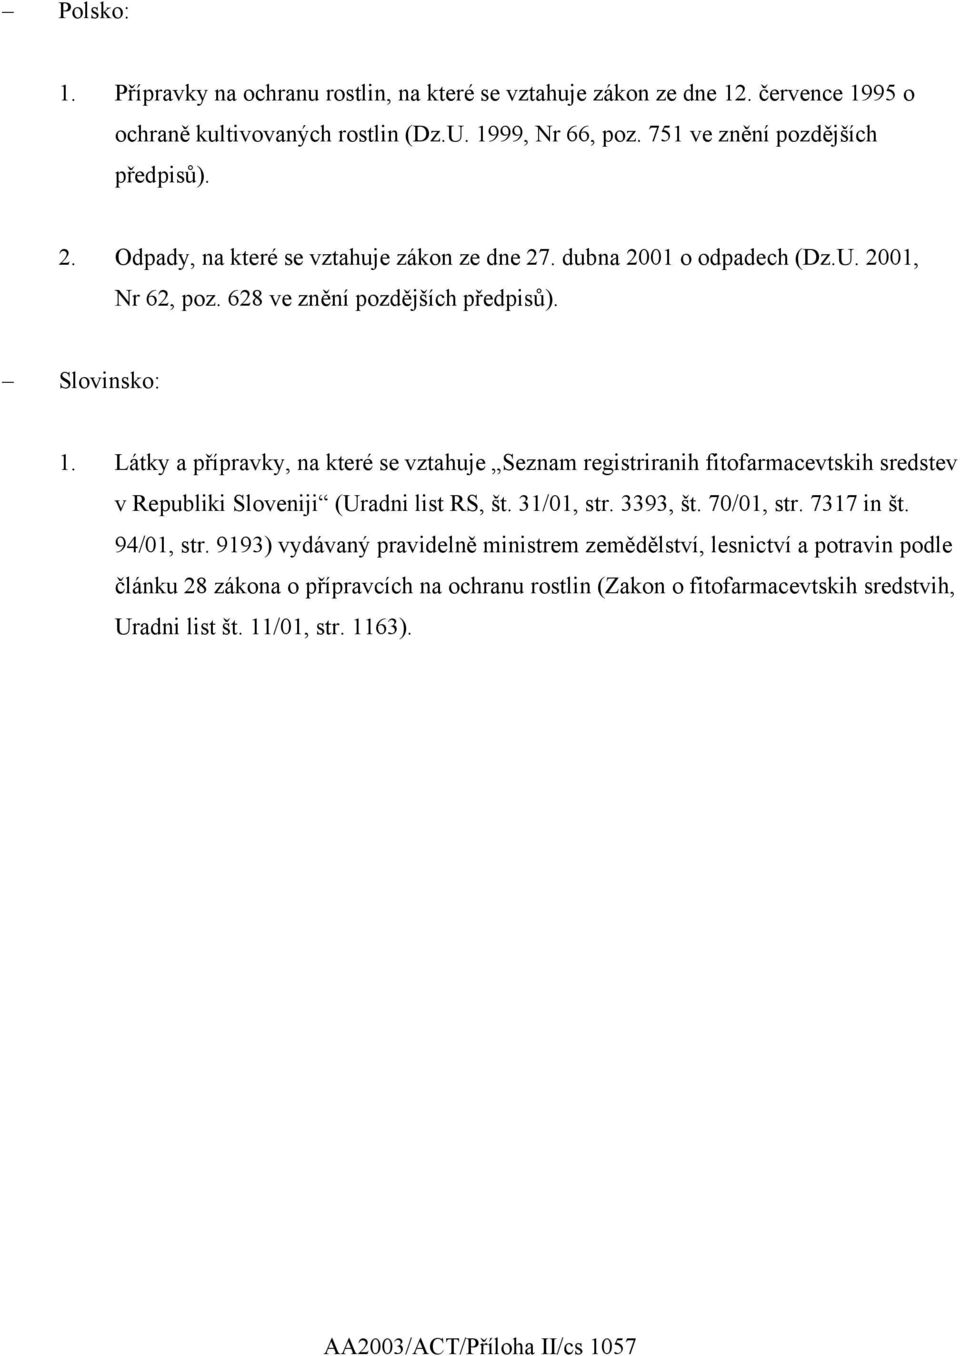 Látky a přípravky, na které se vztahuje Seznam registriranih fitofarmacevtskih sredstev v Republiki Sloveniji (Uradni list RS, št. 31/01, str. 3393, št. 70/01, str. 7317 in št.